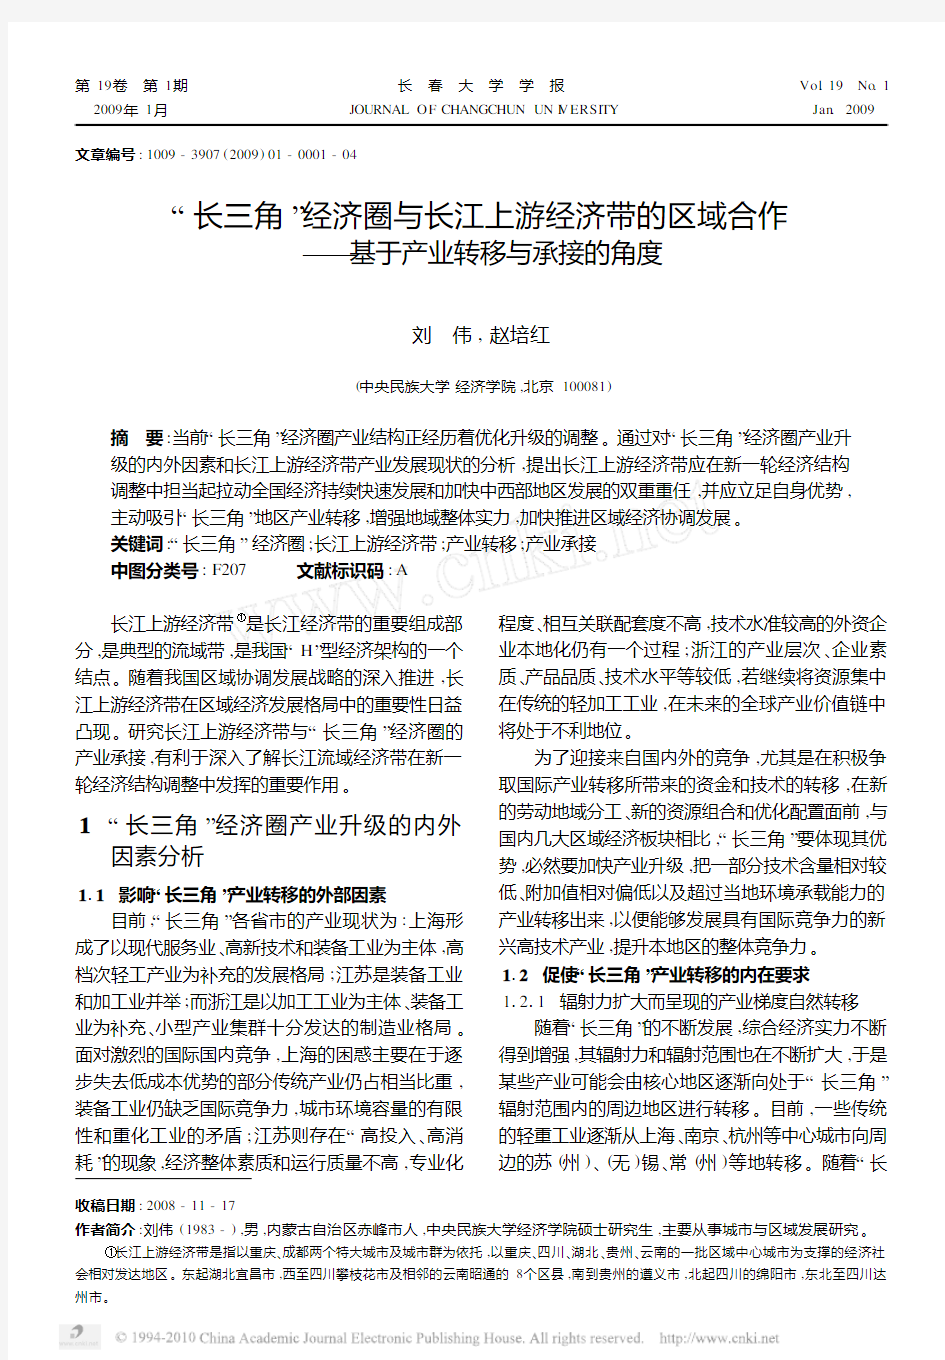 _长三角_经济圈与长江上游经济带的区域合作_基于产业转移与承接的角度